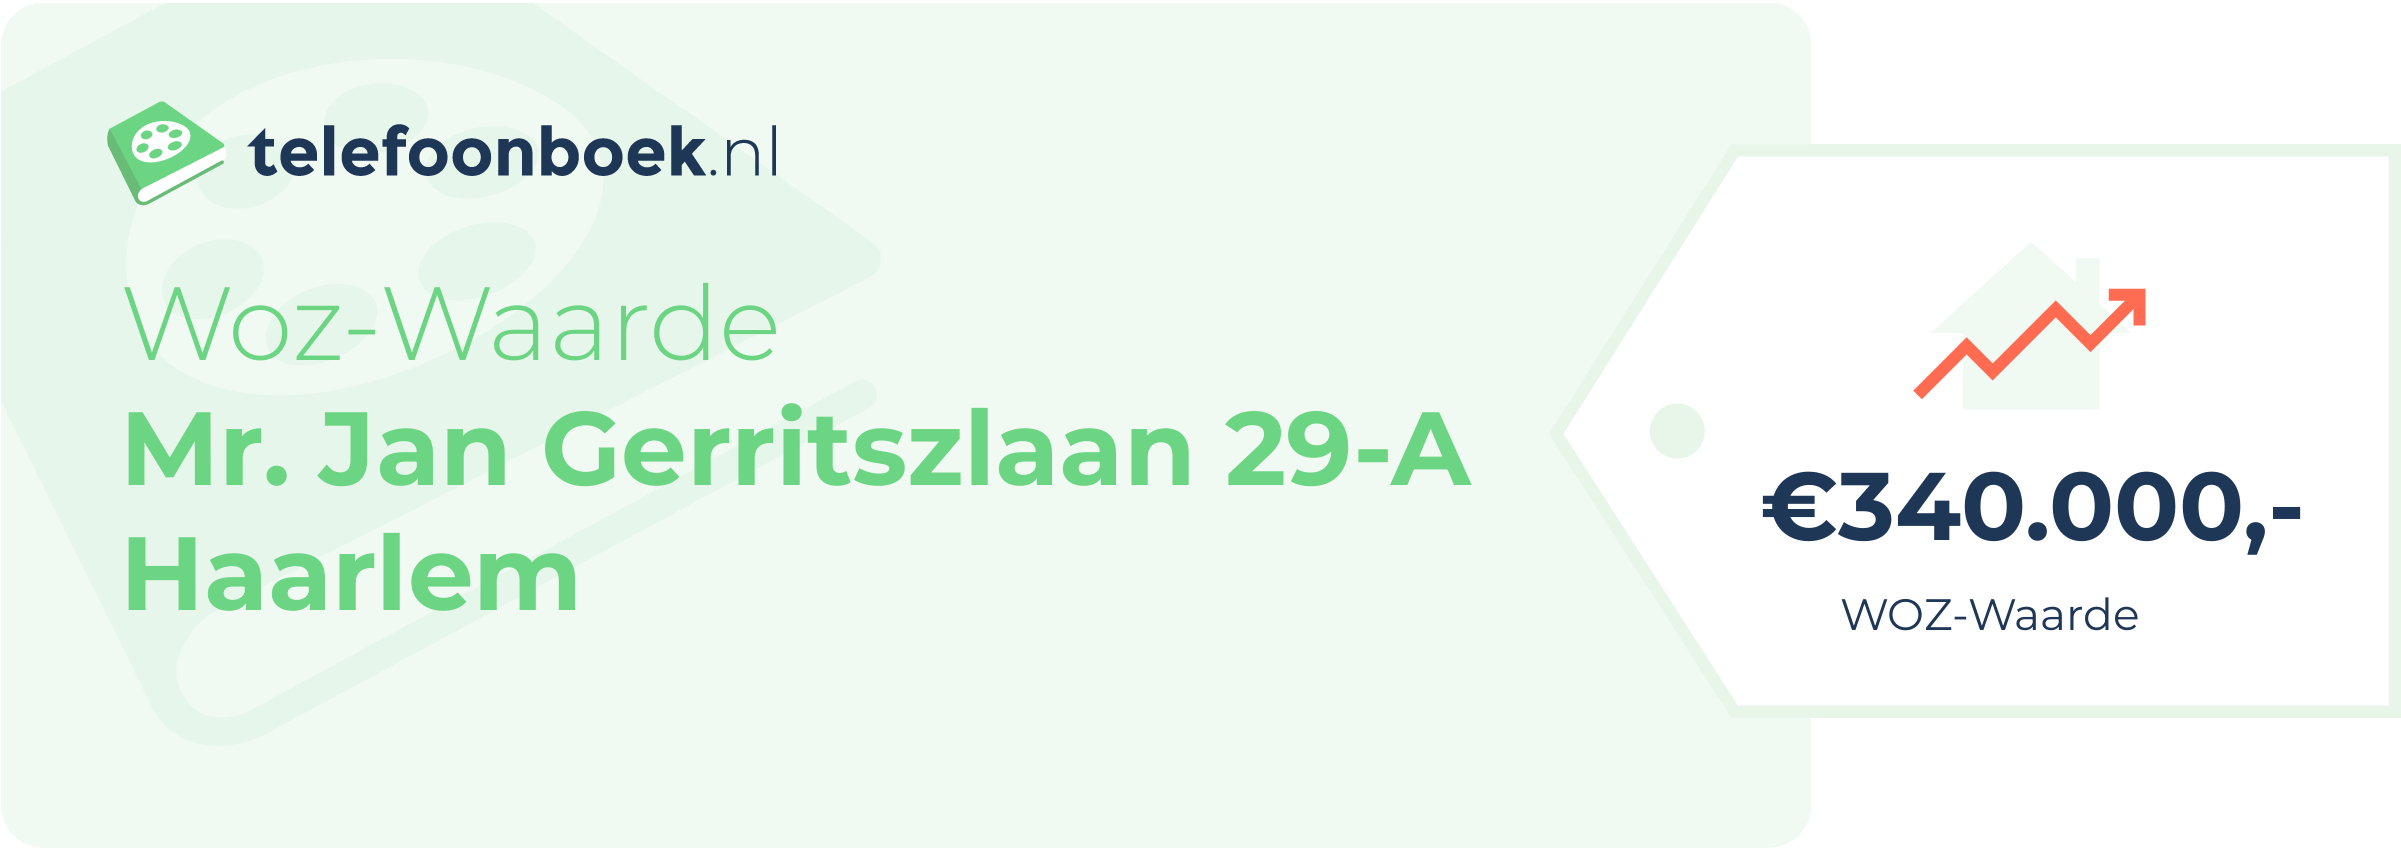 WOZ-waarde Mr. Jan Gerritszlaan 29-A Haarlem